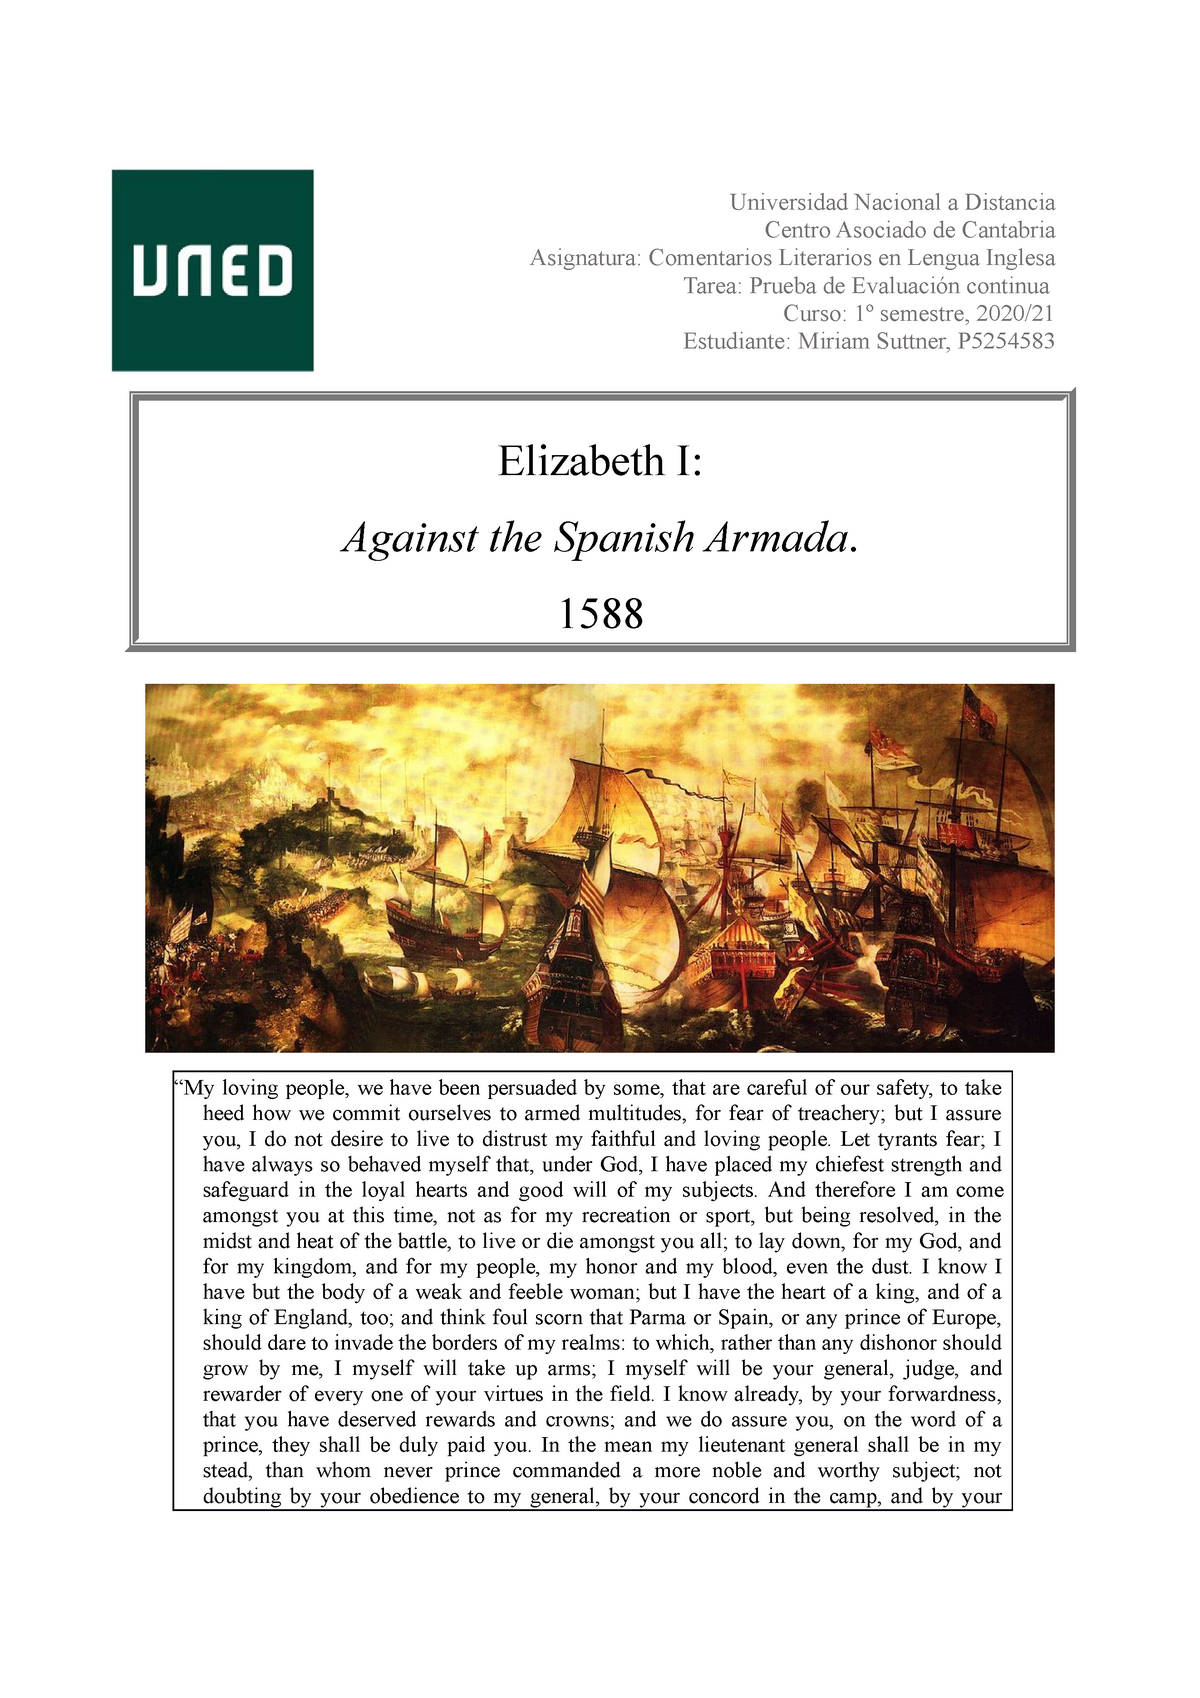 speech against spanish armada